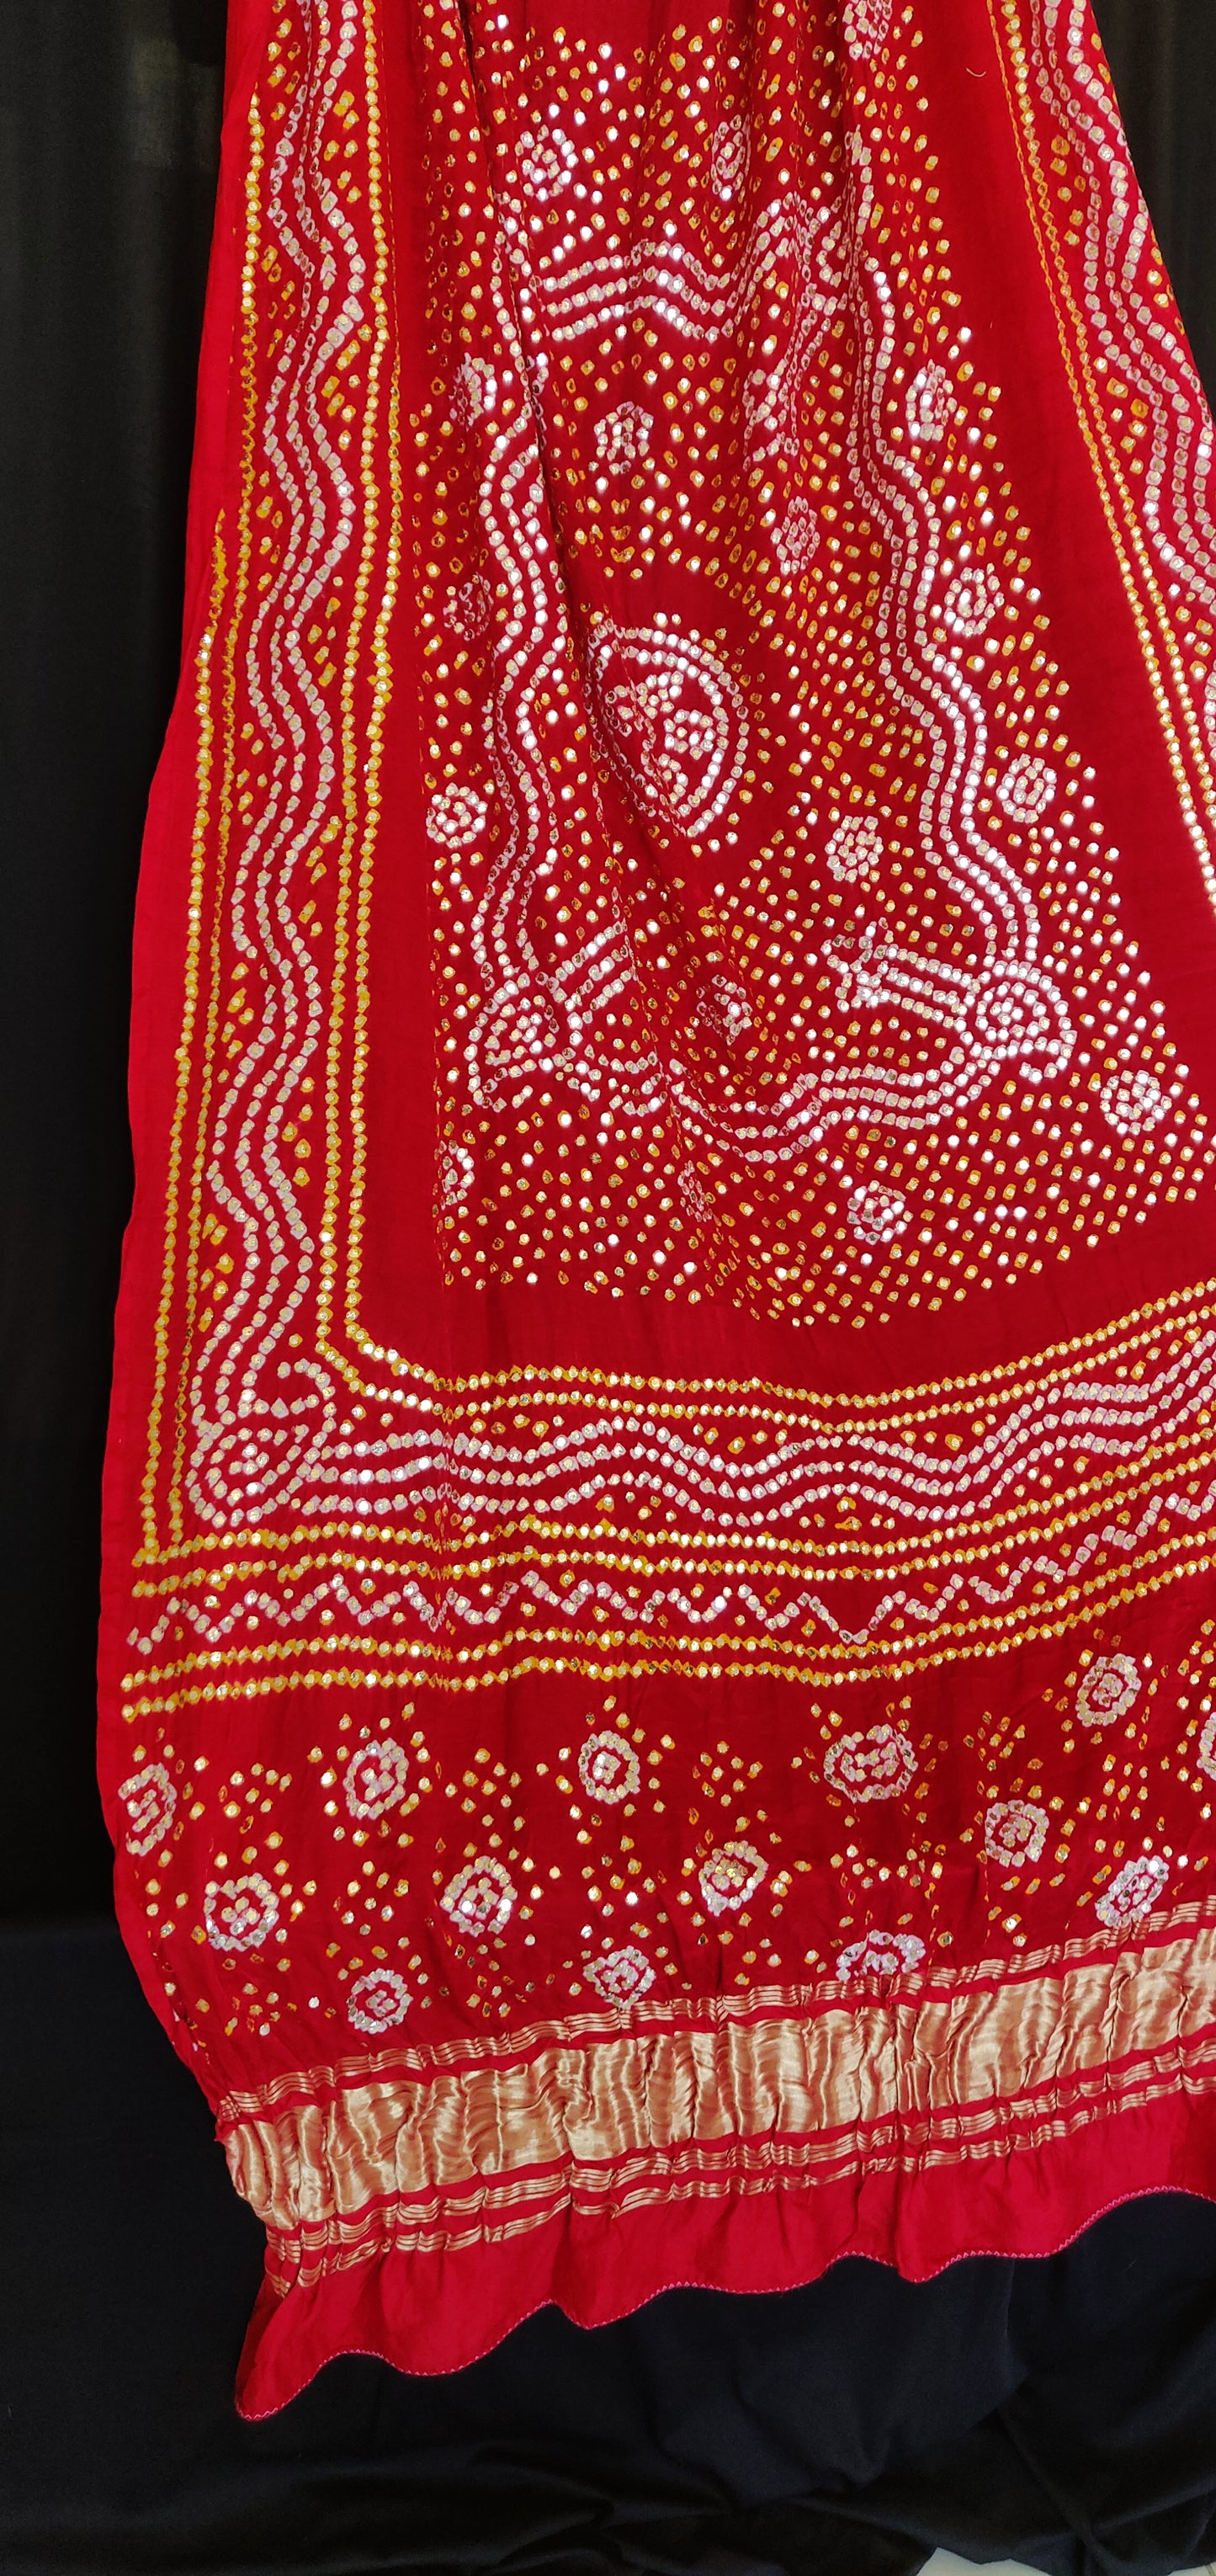 Red gajji silk bandhej dupatta with heavy mukaish work